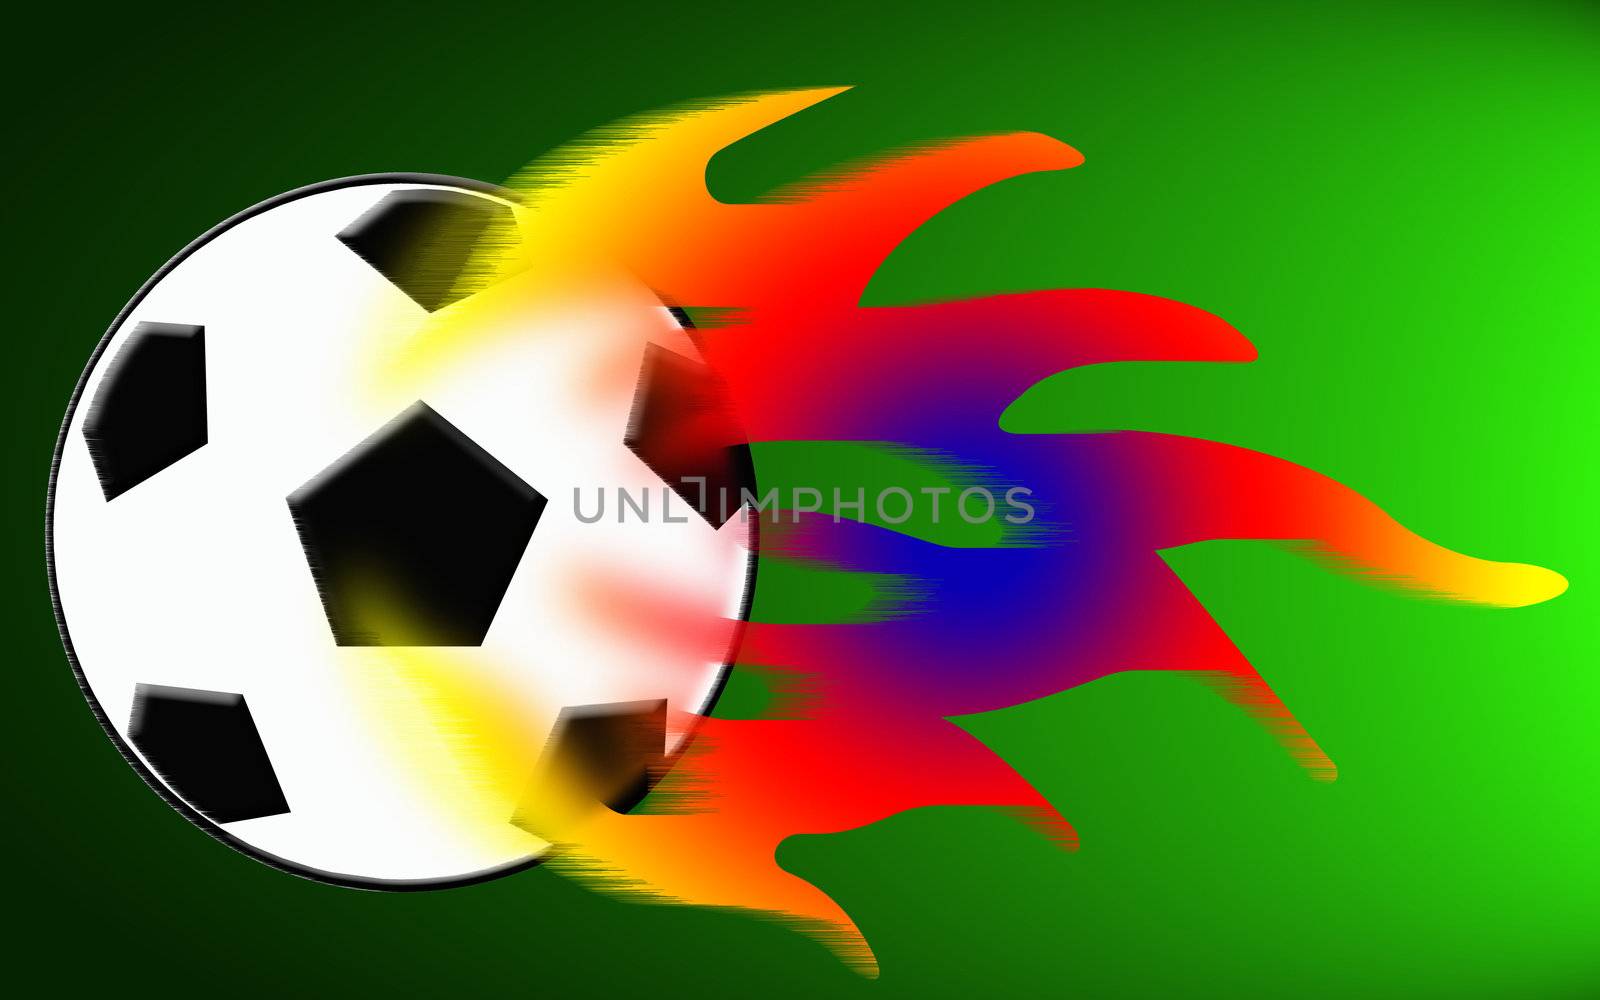 illustration of the burning soccer ball